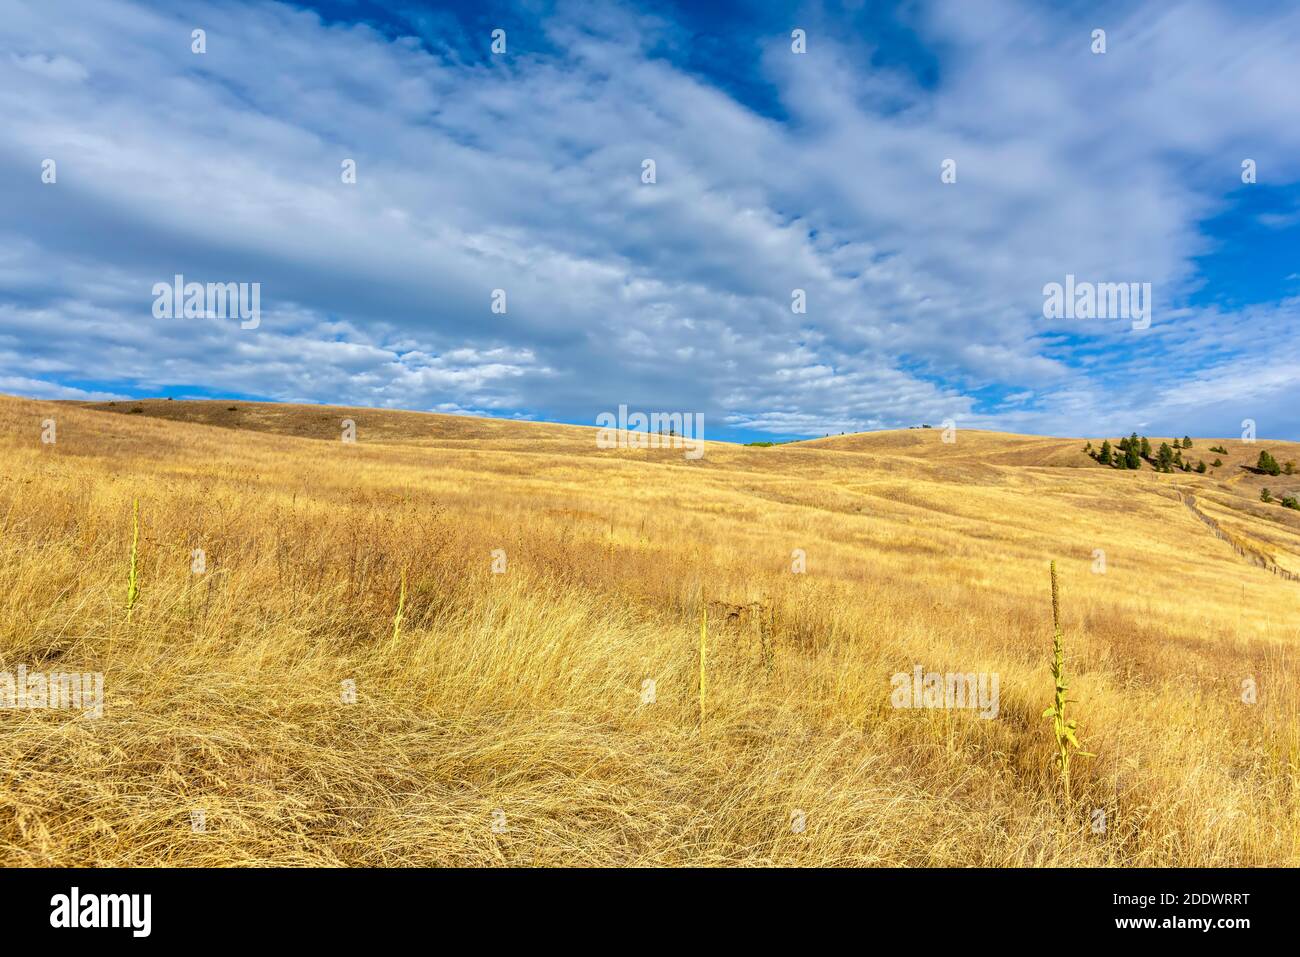 Erba gialla d'autunno nella steppa, sulle colline e gli alberi verdi in lontananza, cielo blu con le nuvole bianche sullo sfondo. Foto Stock